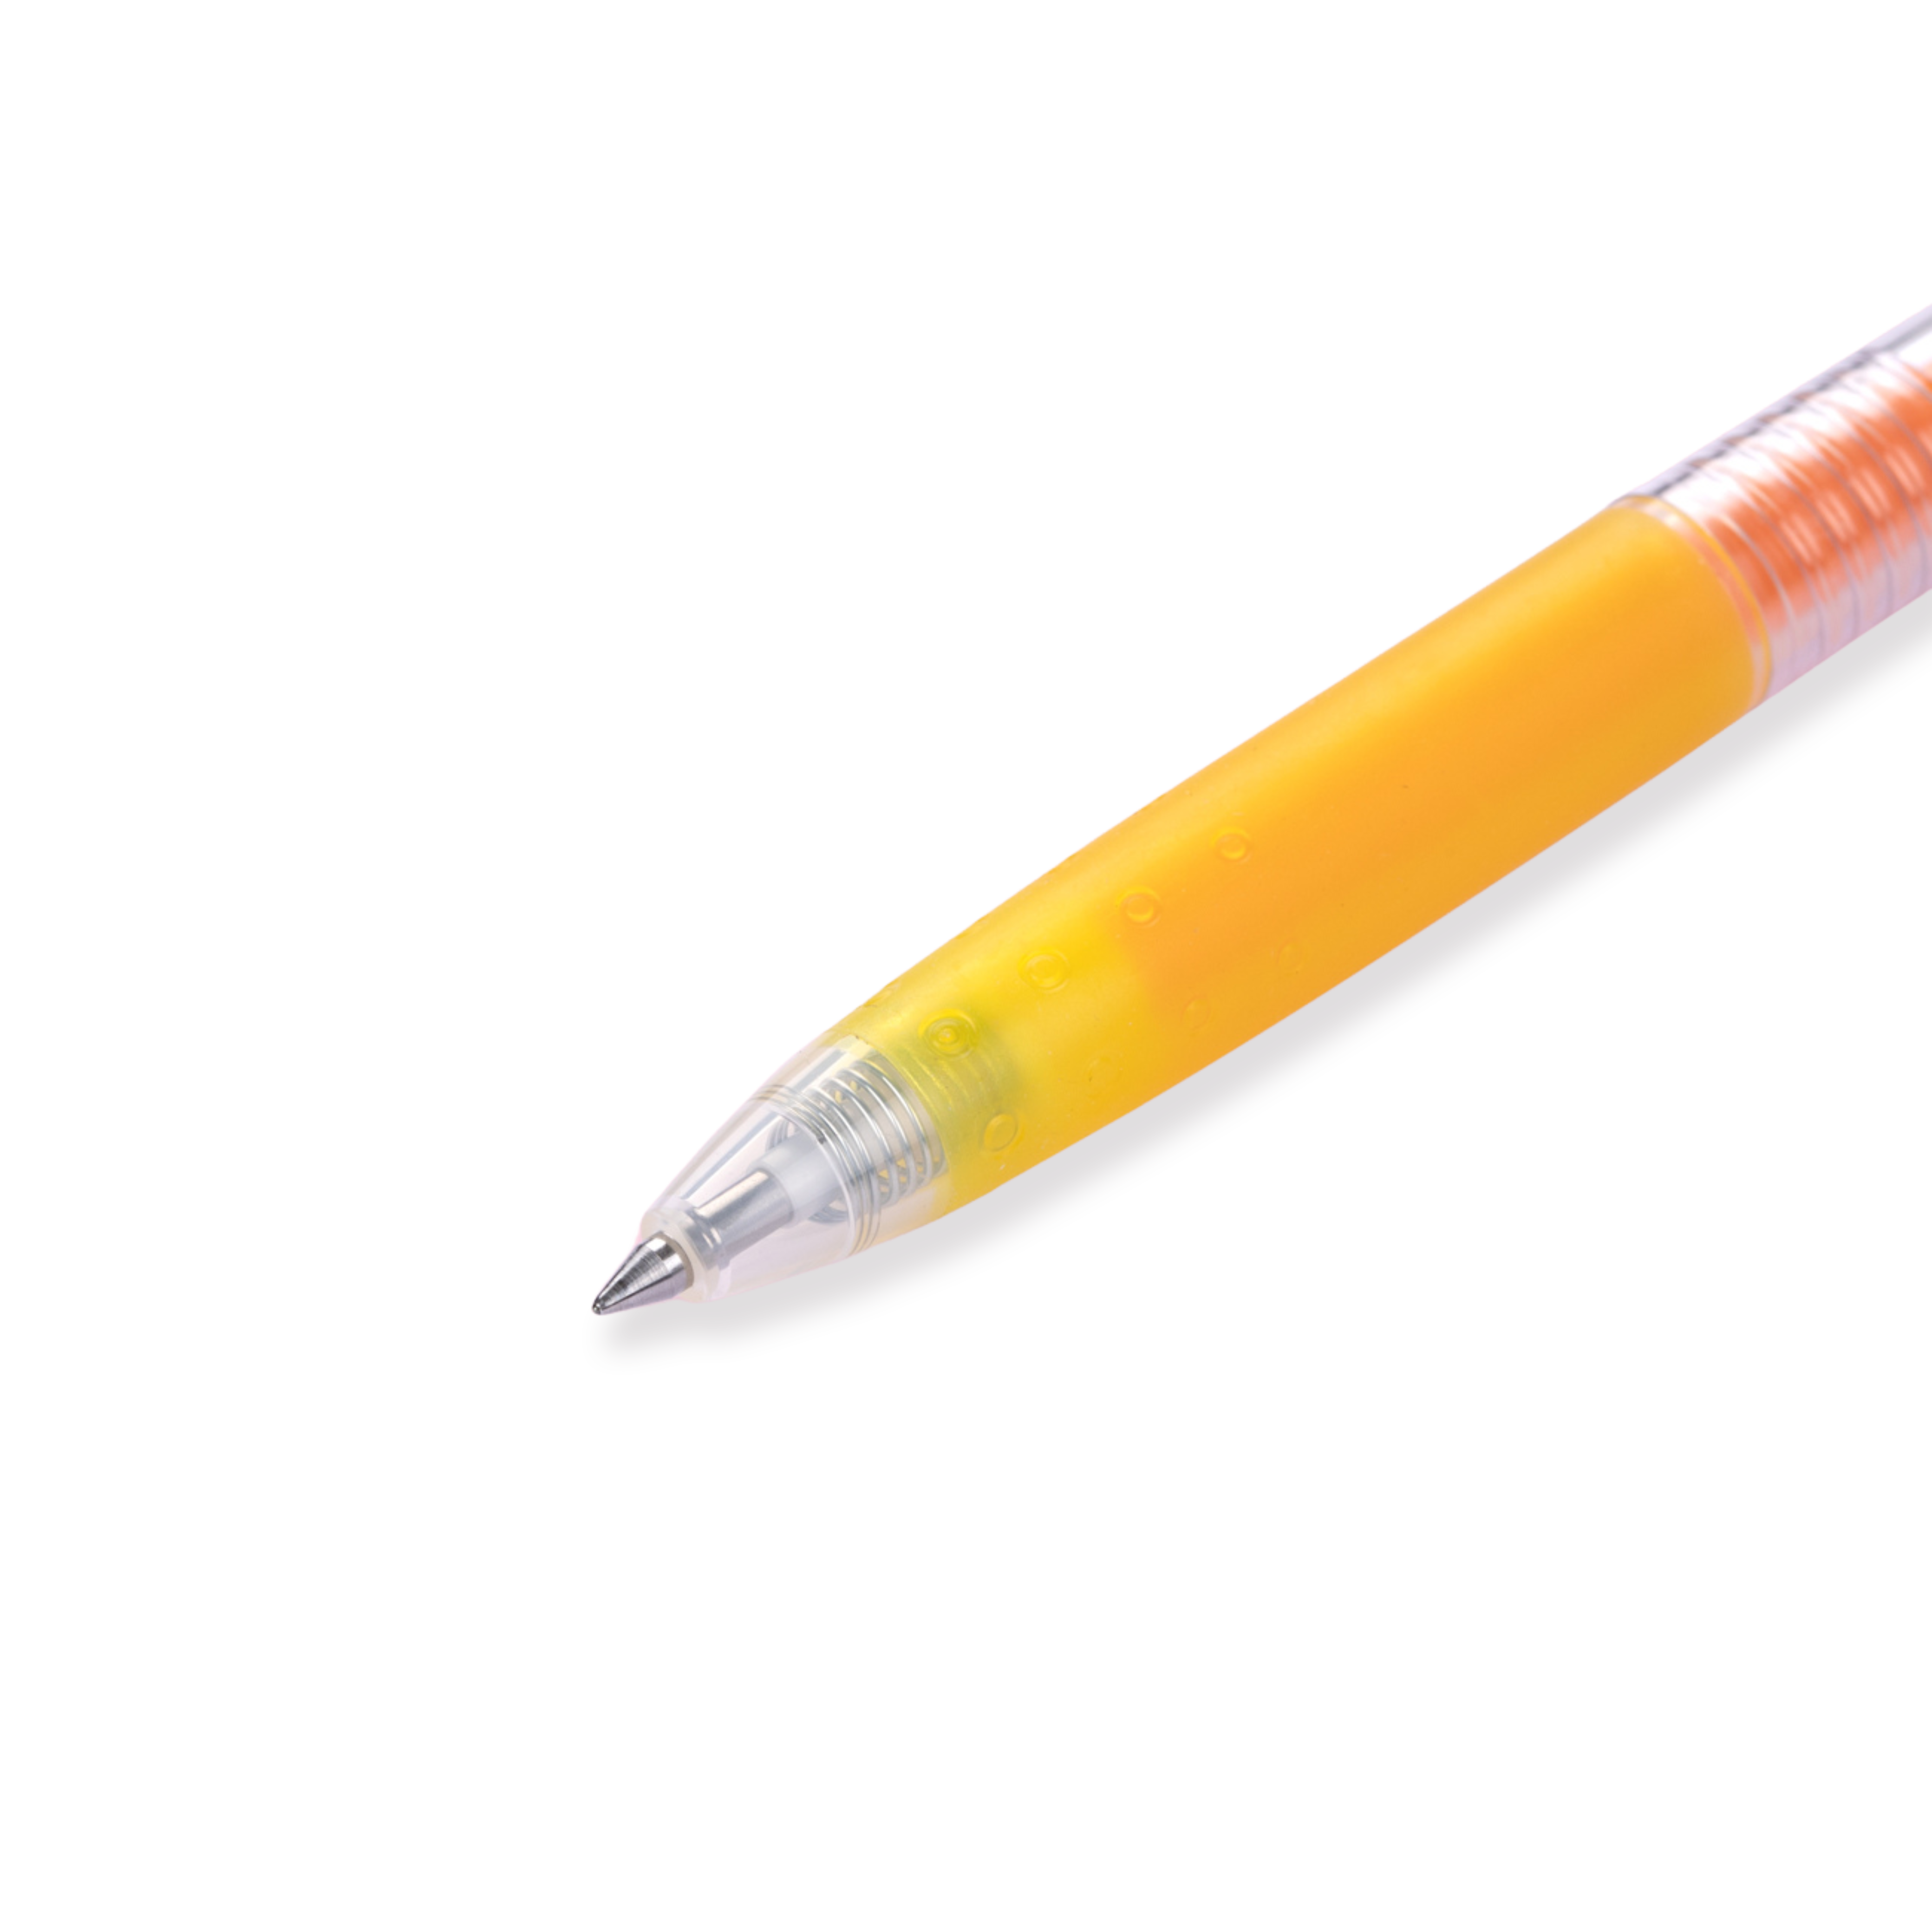 Pilot Juice Gel Pen - 0.5 mm - Yellow